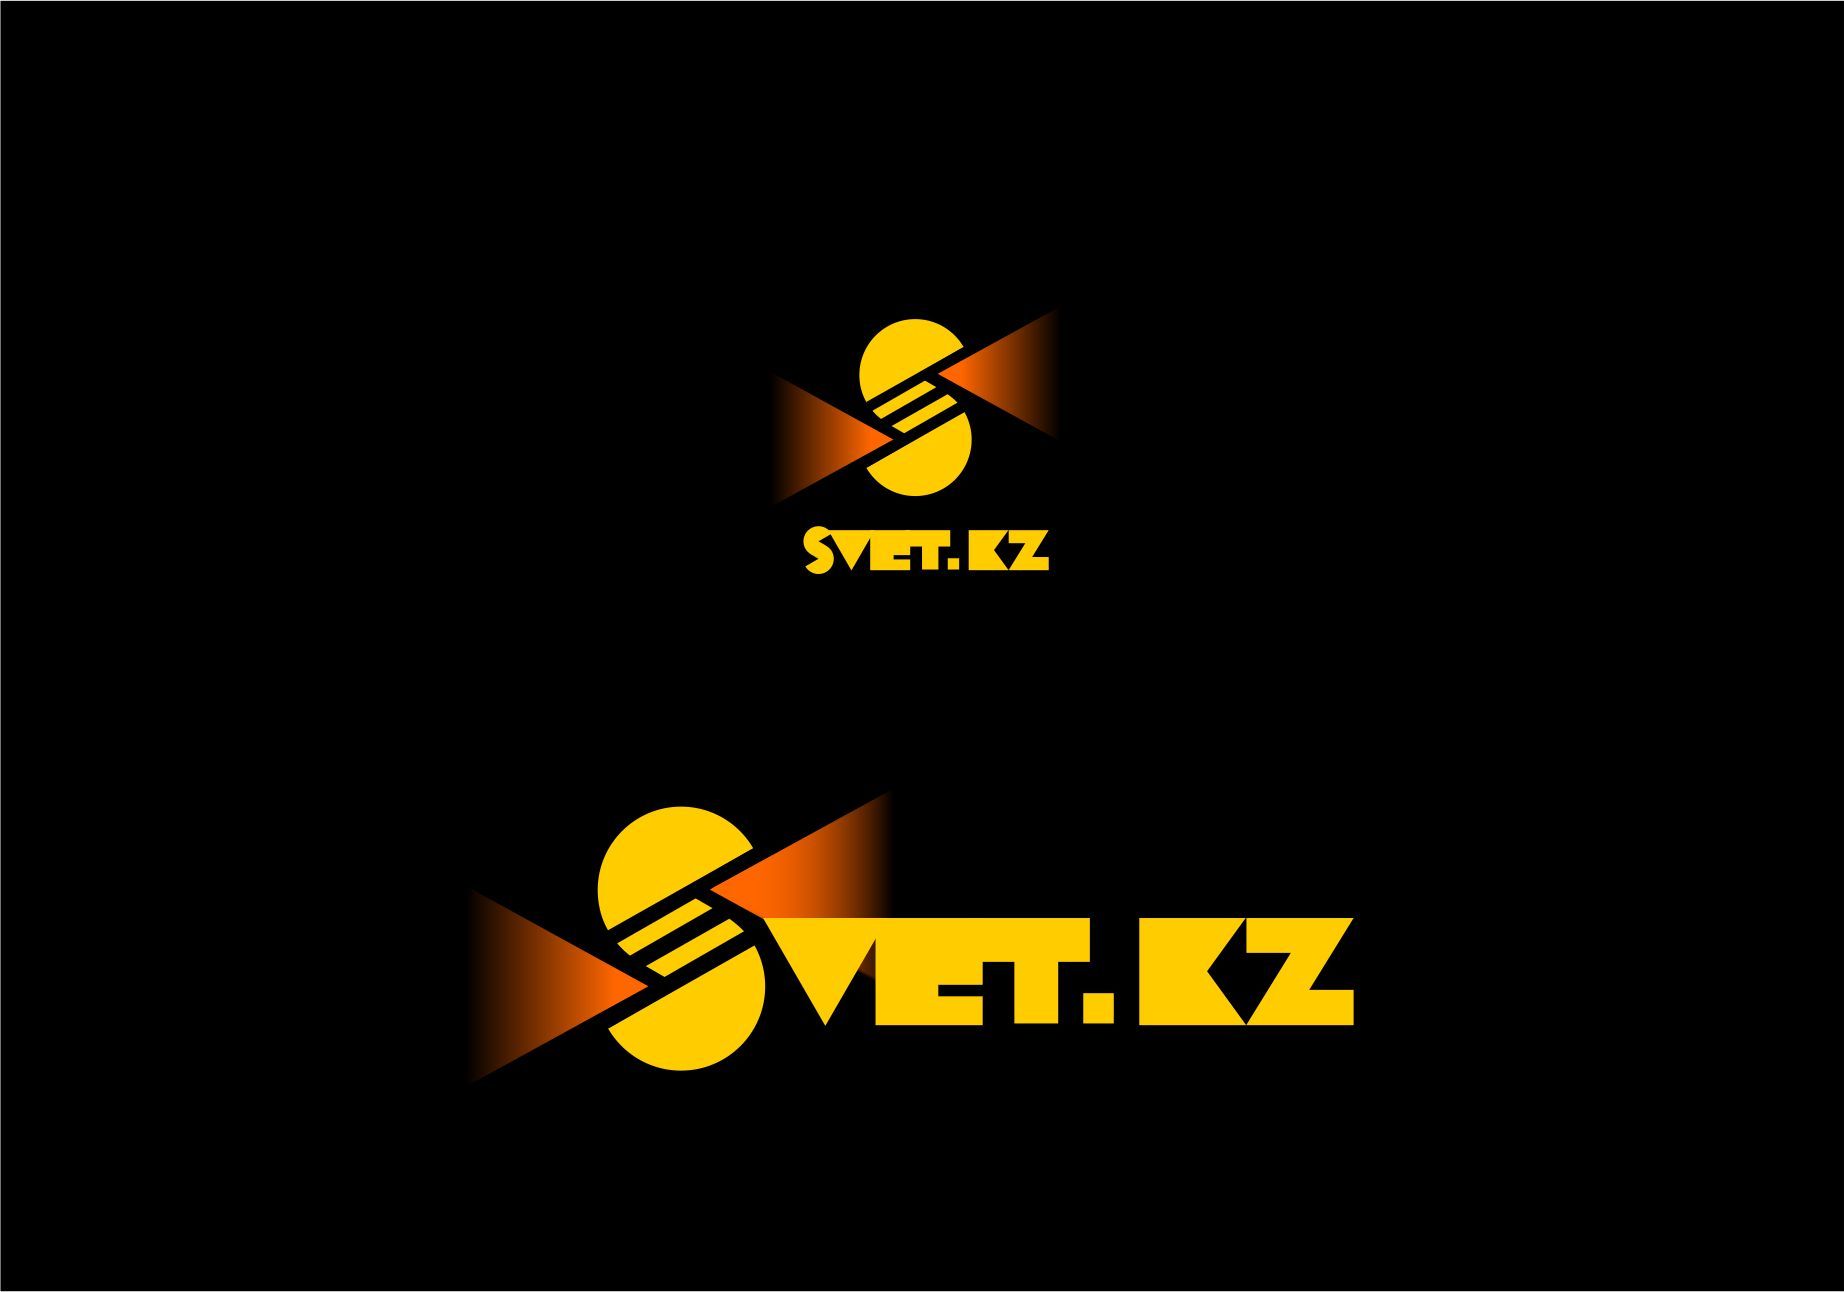 Лого и фирменный стиль для SVET.kz - дизайнер PAPANIN